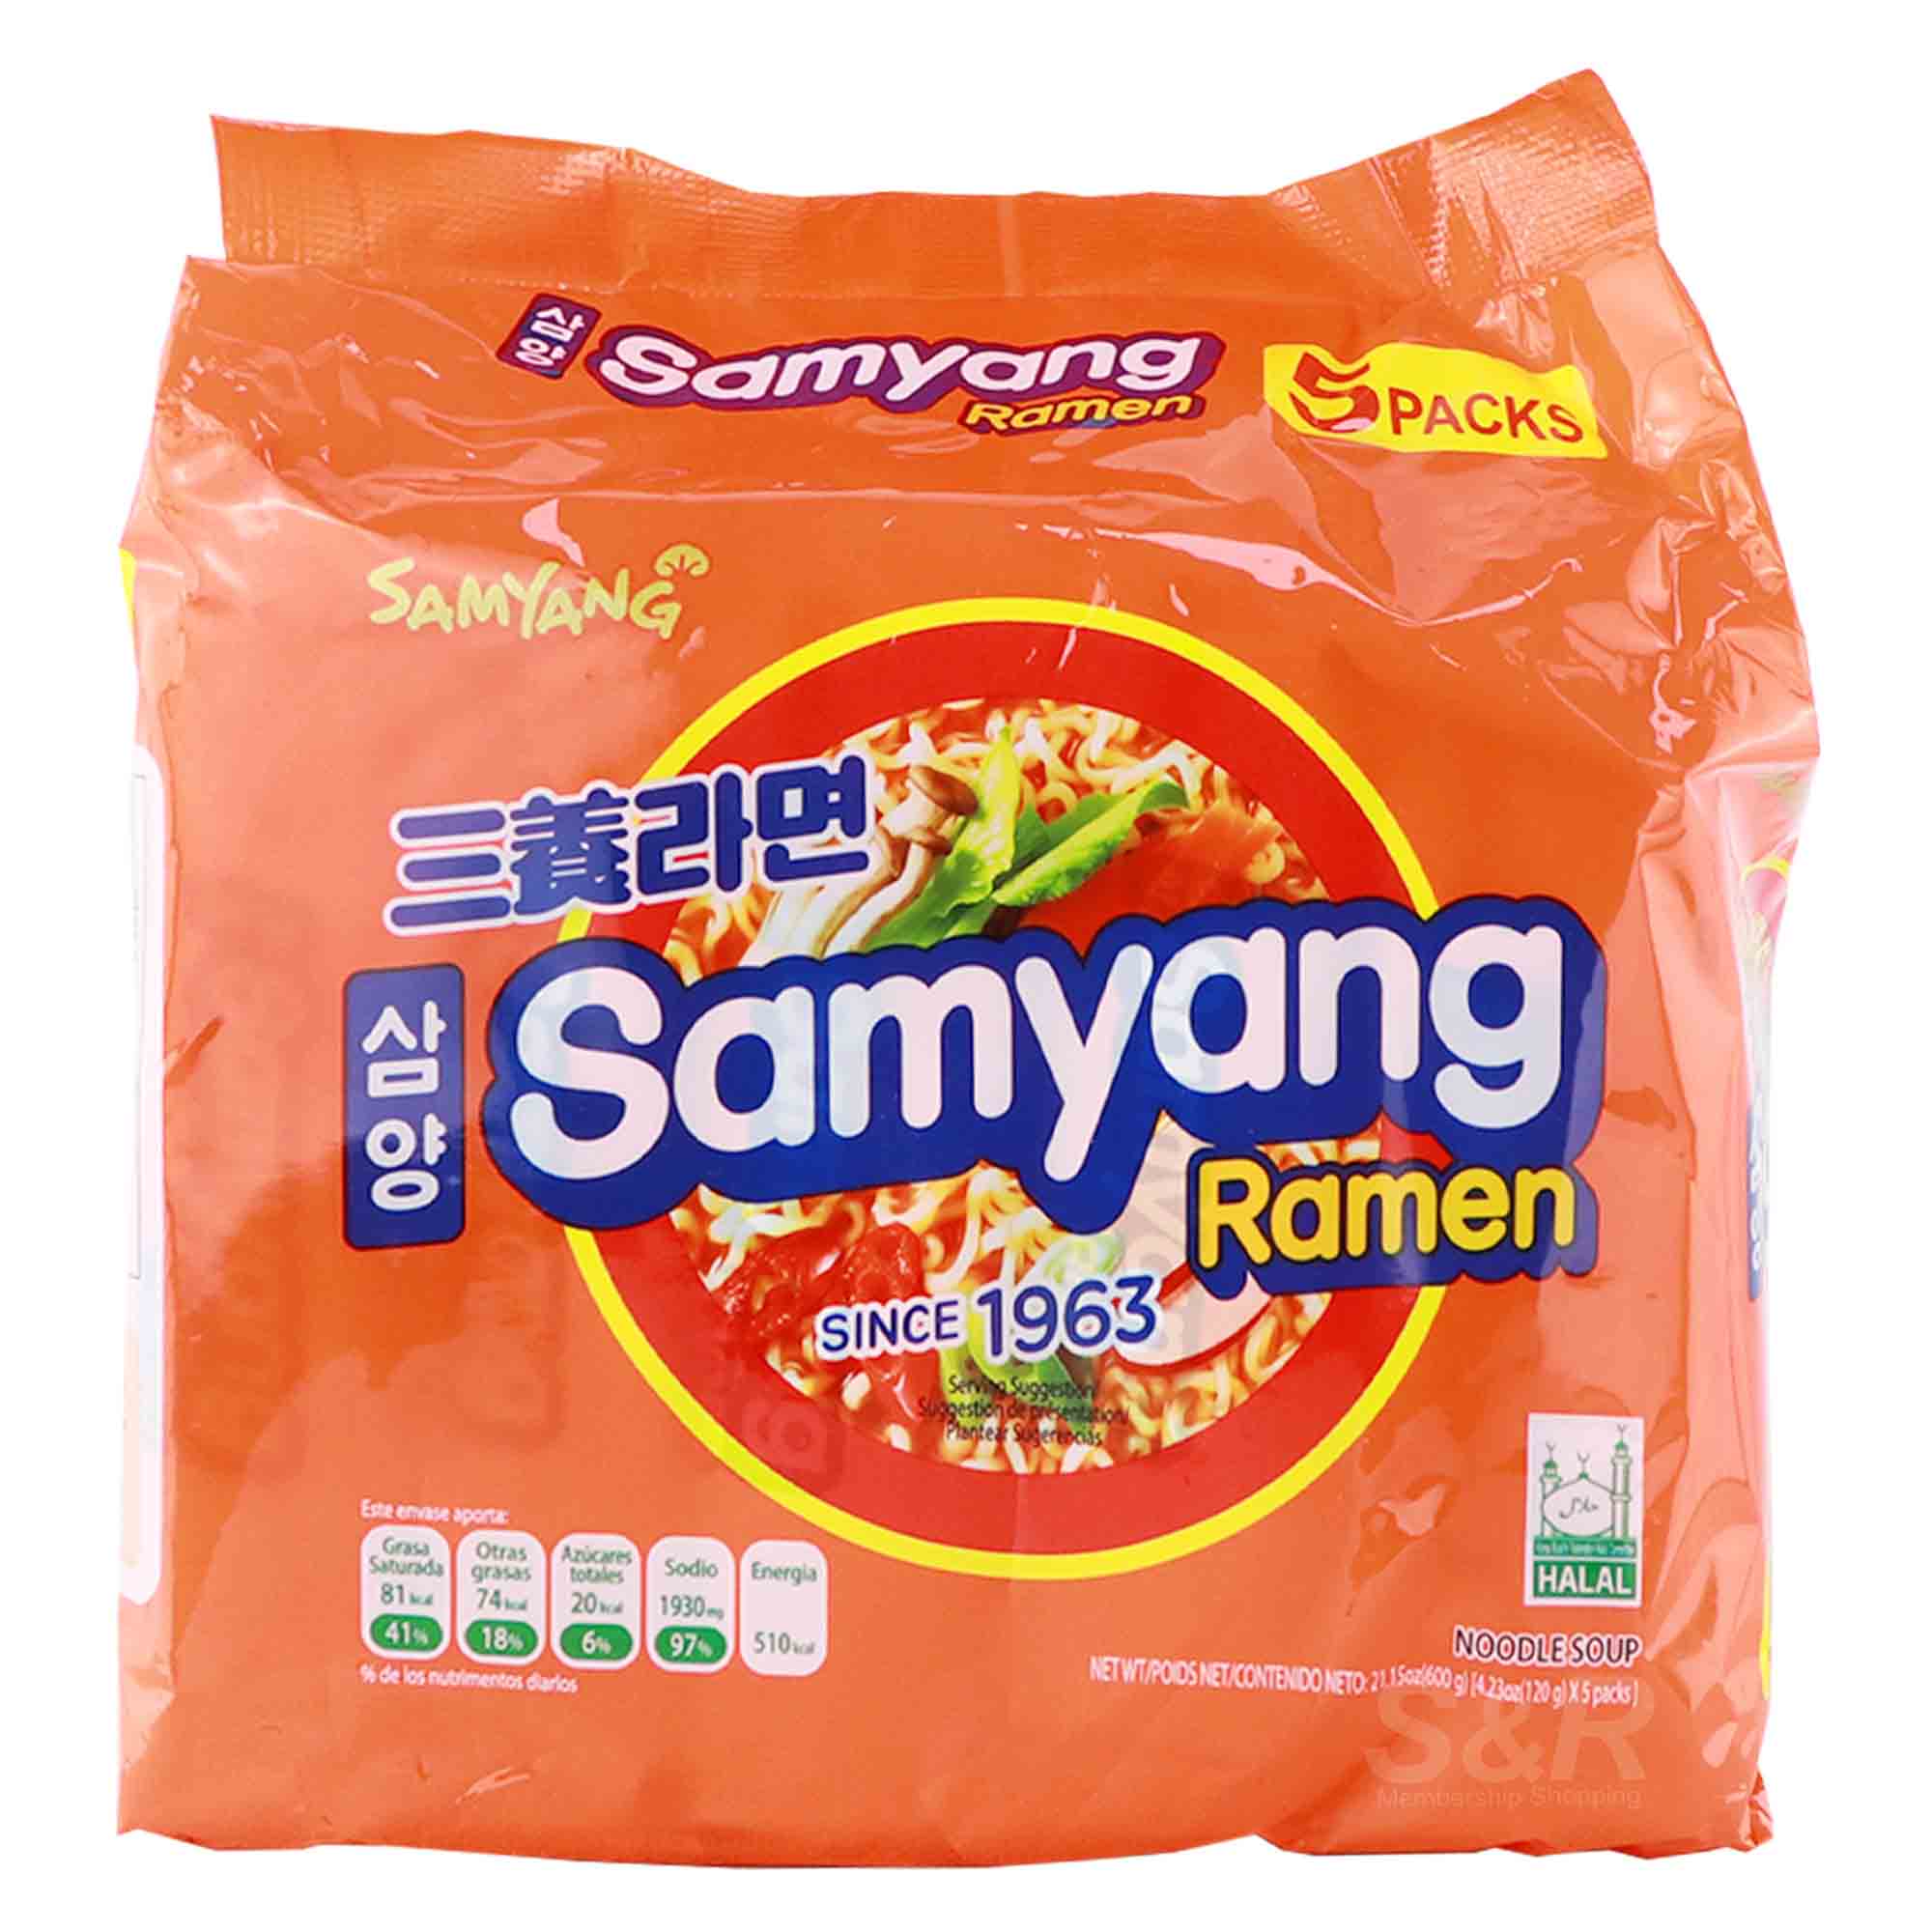 Samyang Original Ramen 5 packs